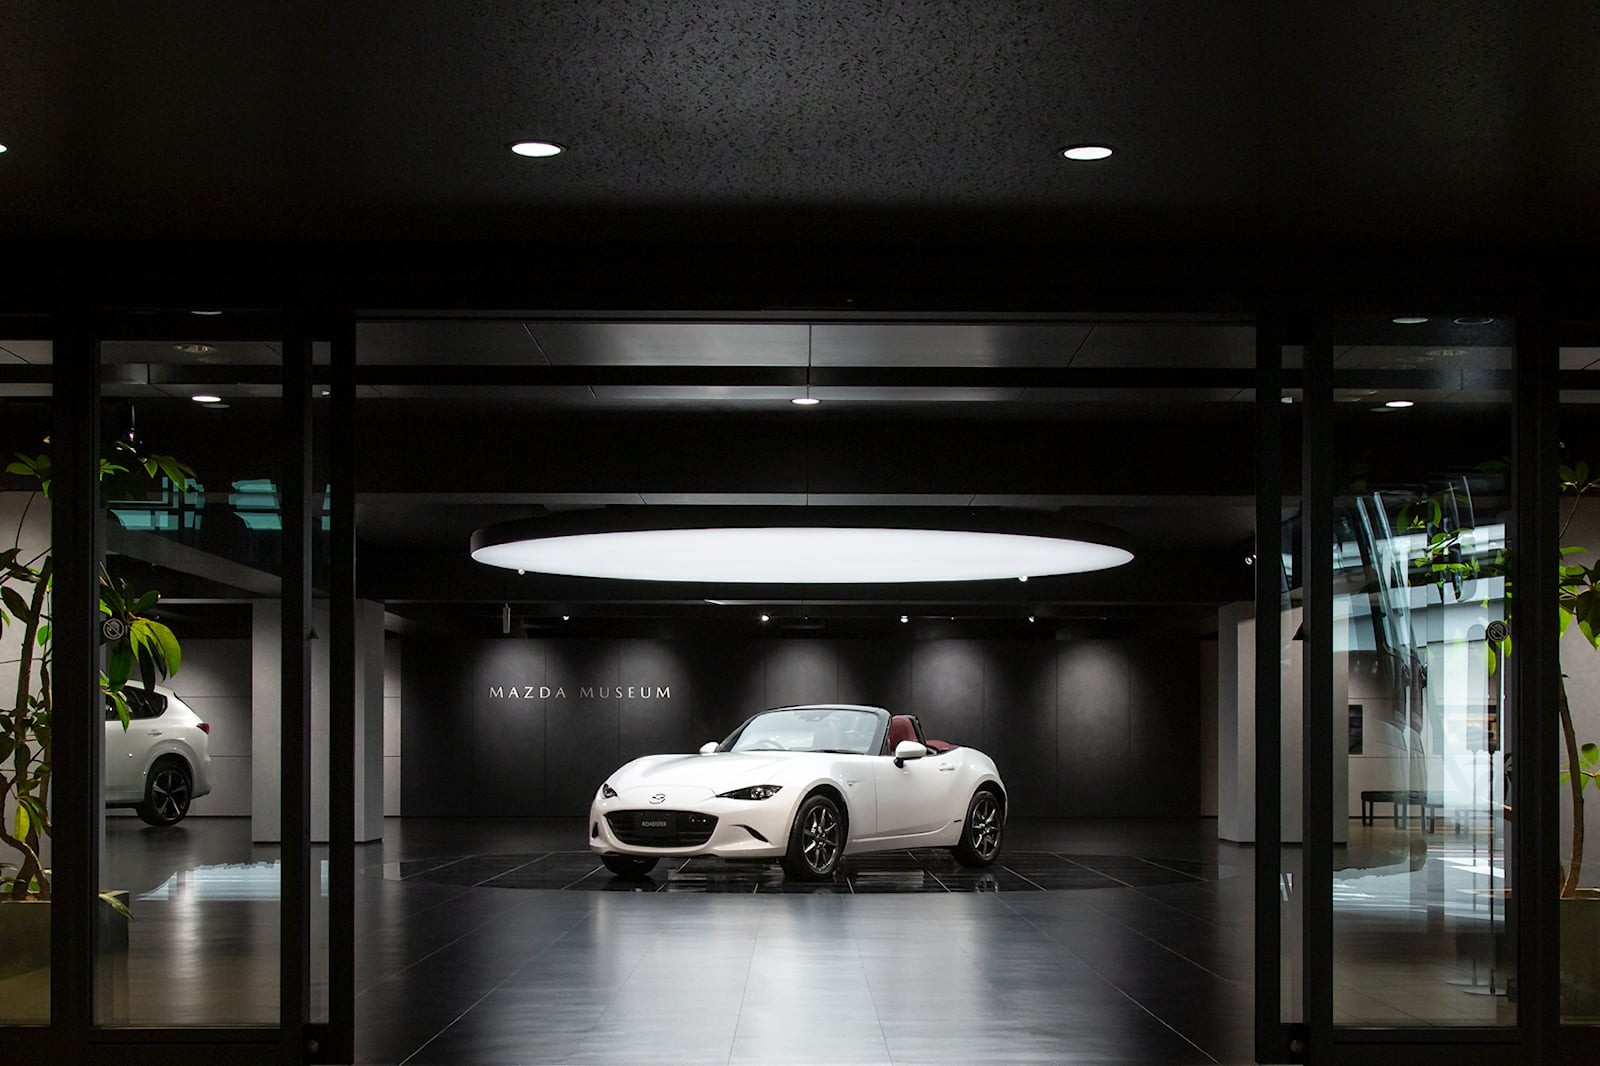 Khám phá bảo tàng của Mazda tại Nhật Bản - Ảnh 12.